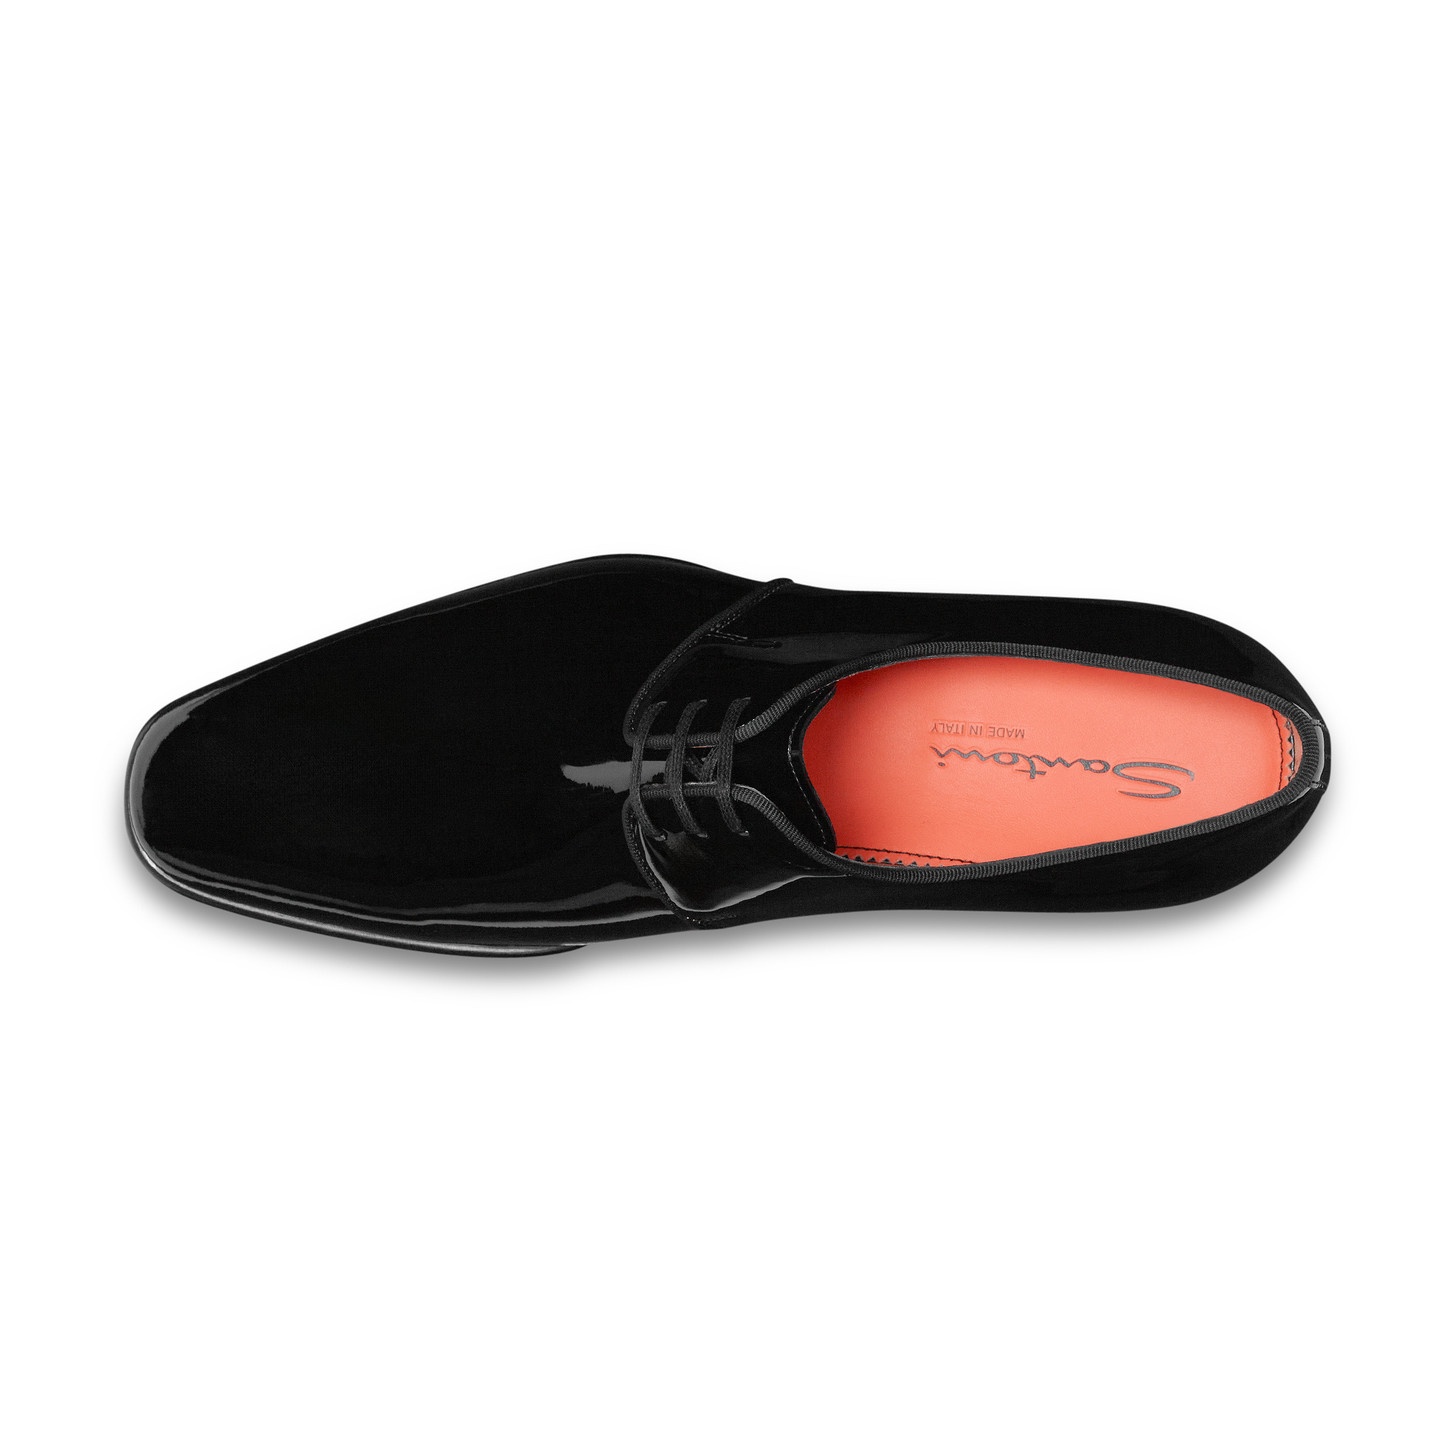 Men's black patent leather Derby shoe - 3